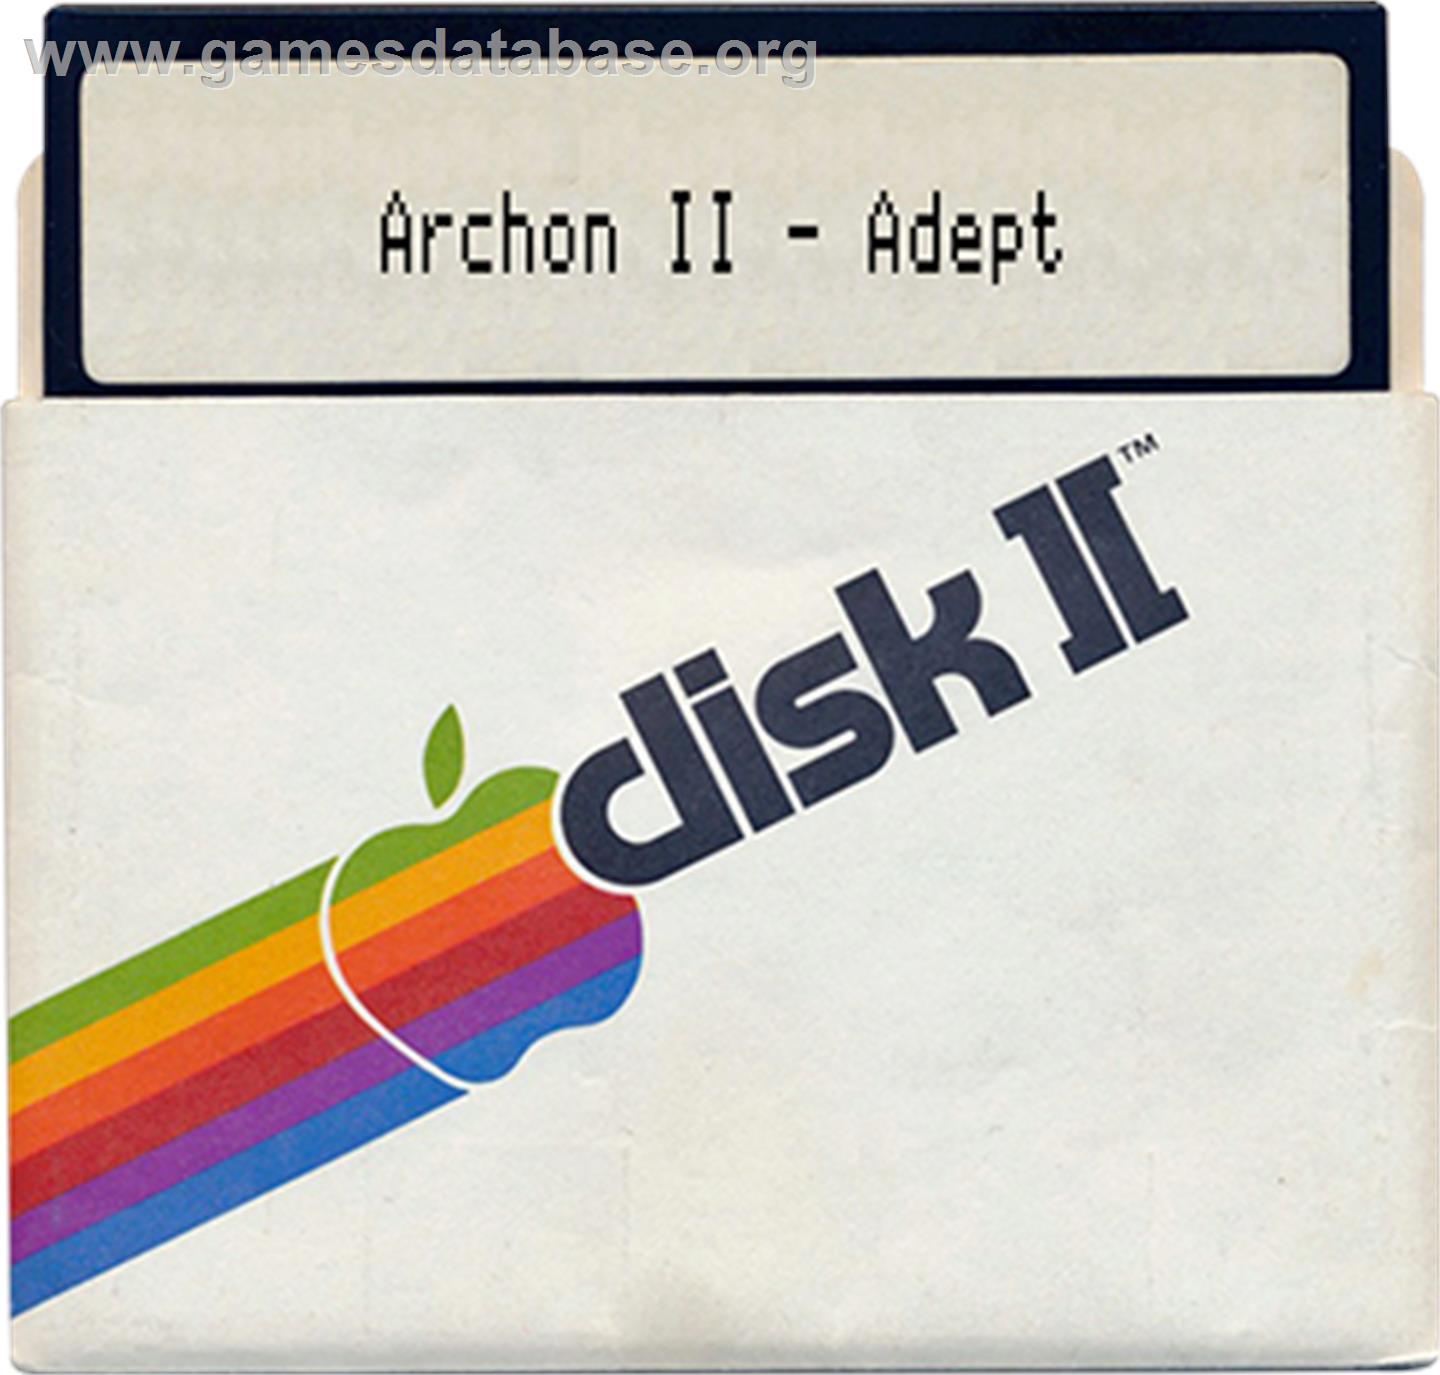 Archon 2: Adept - Apple II - Artwork - Disc